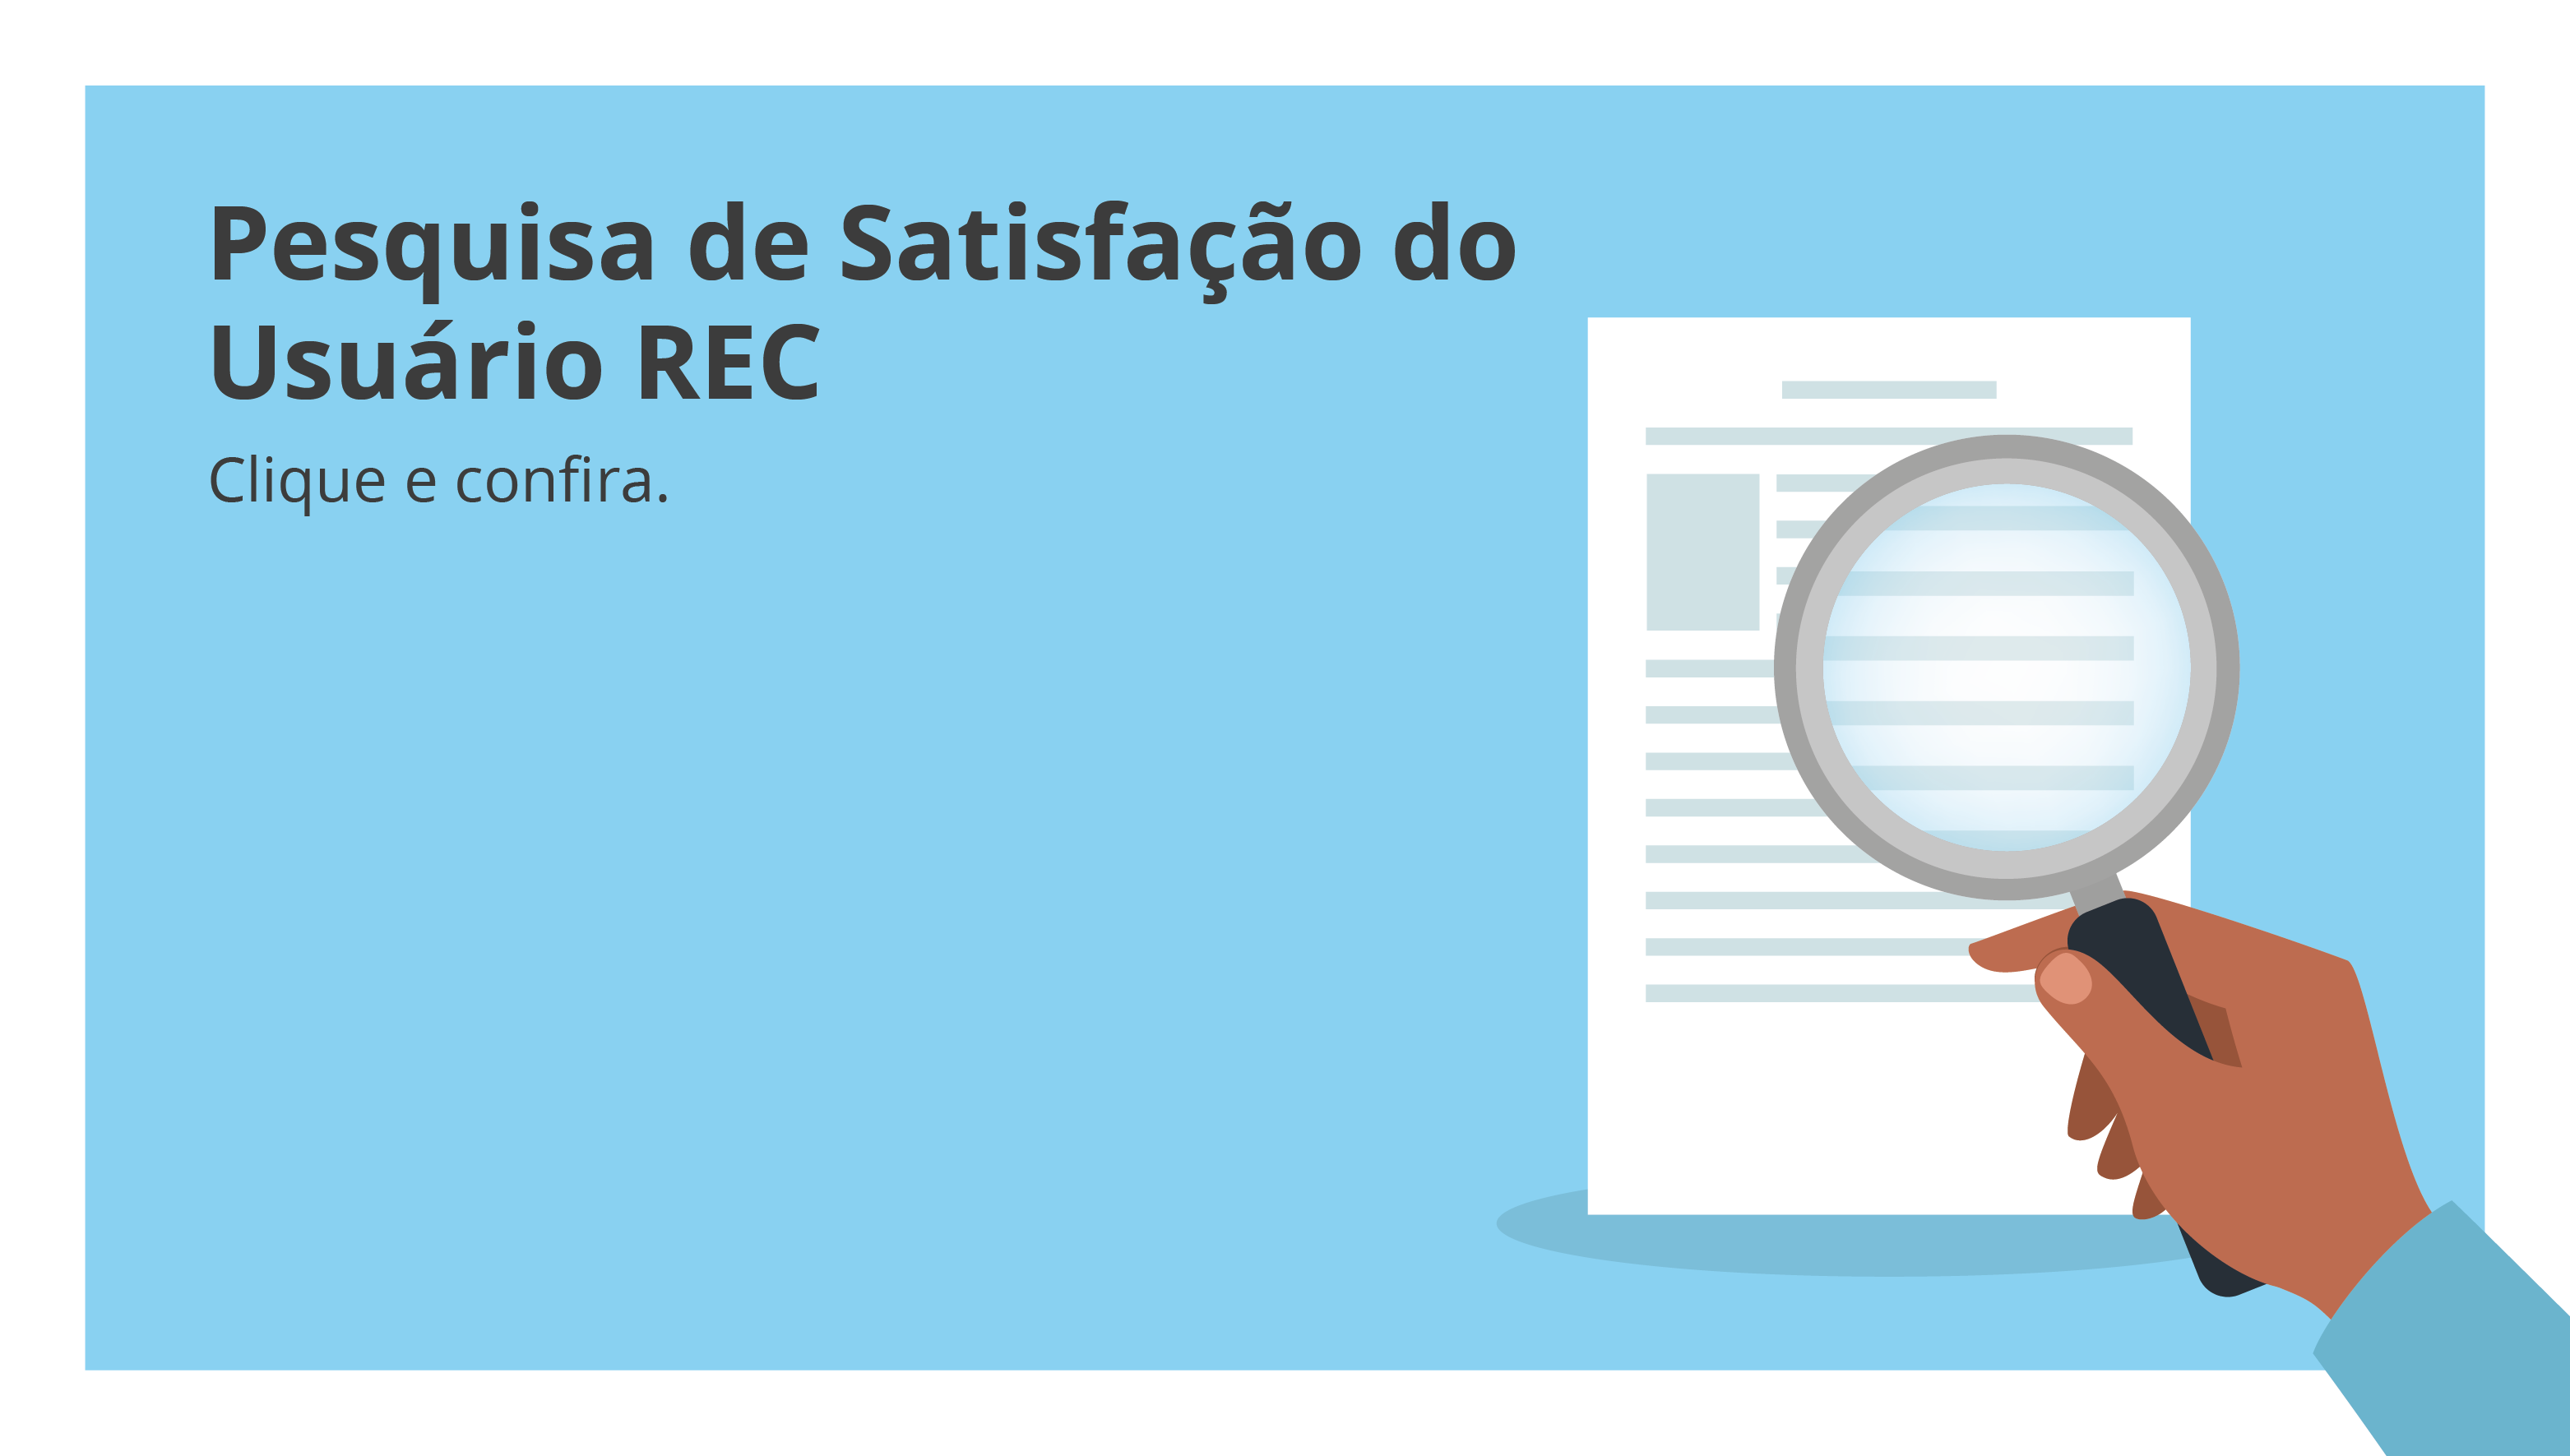 REC lança pesquisa de satisfação do usuário